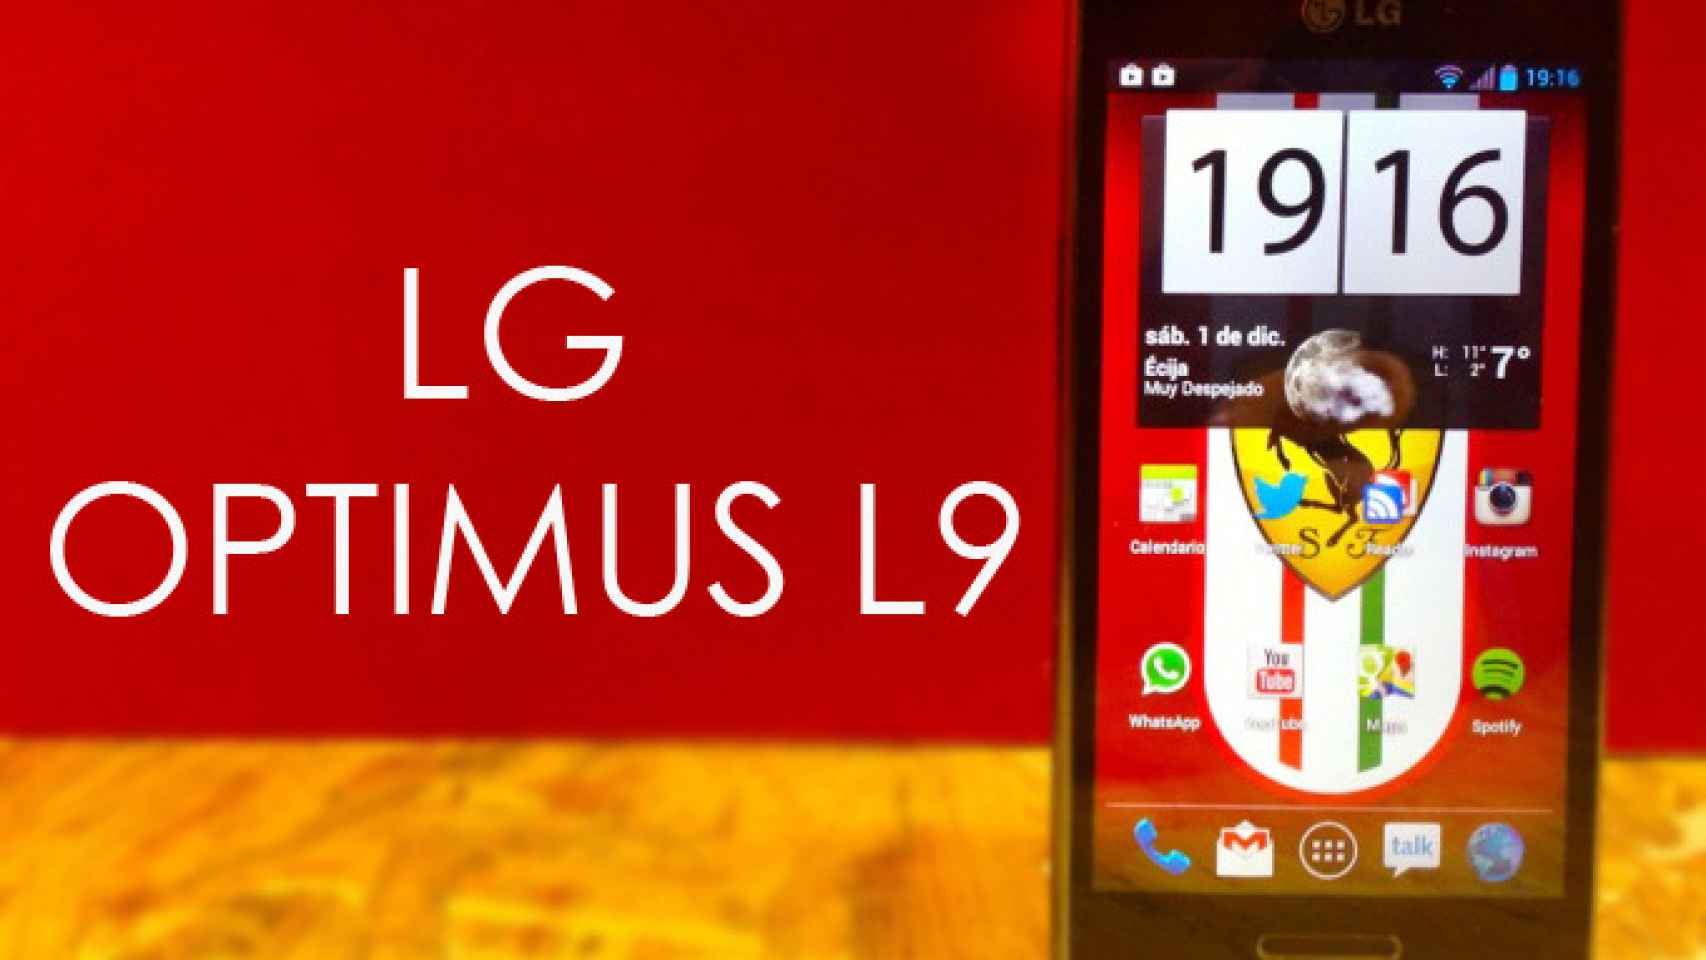 LG Optimus L9: Análisis a fondo y experiencia de uso